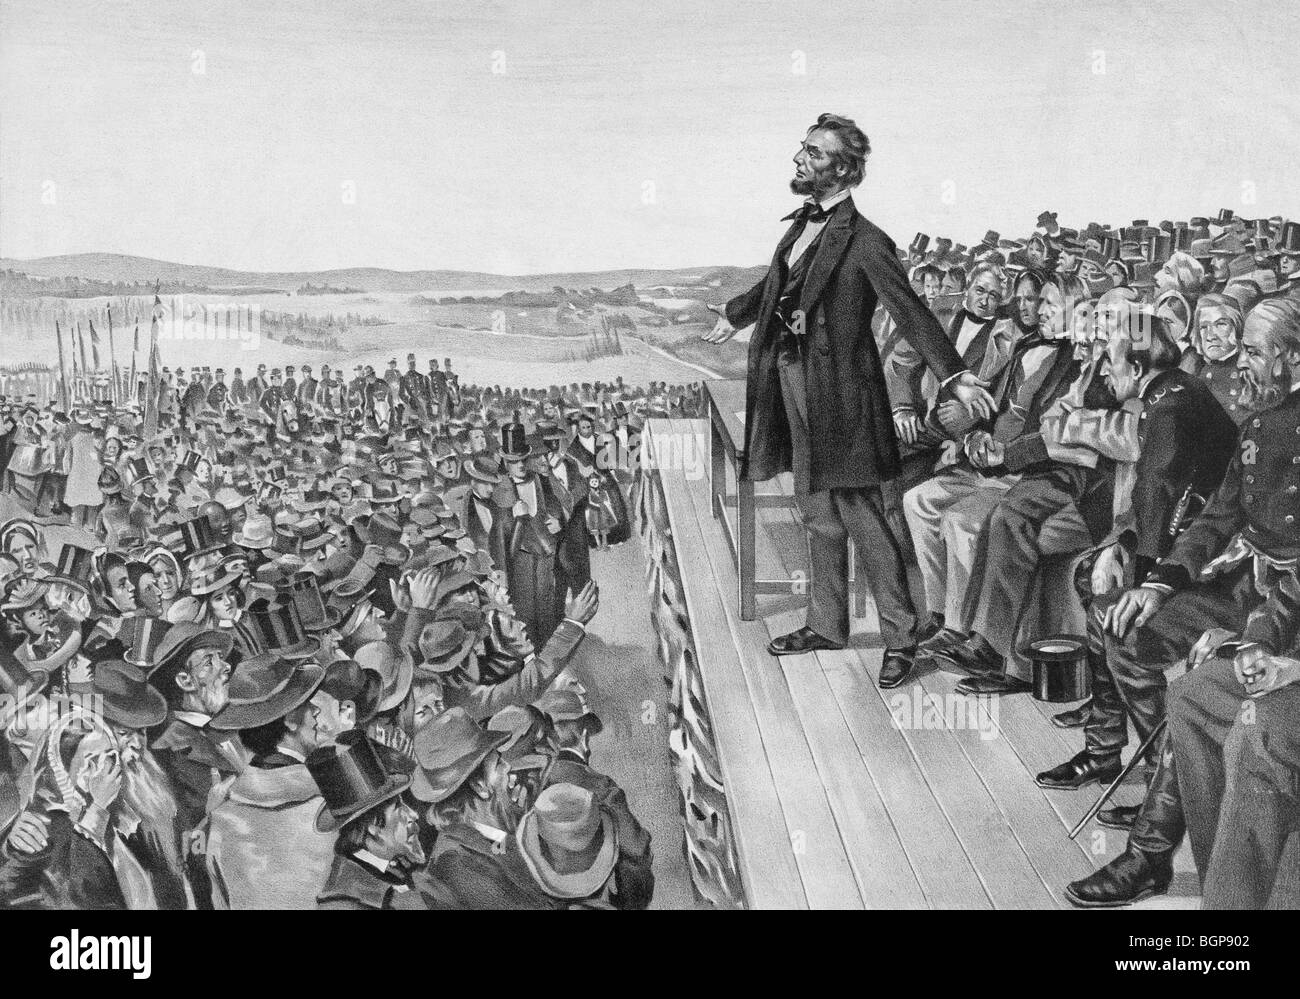 Drucken Sie c1905 von US-Präsident Abraham Lincoln geben die berühmte Gettysburg-Rede am 19. November 1863. Stockfoto